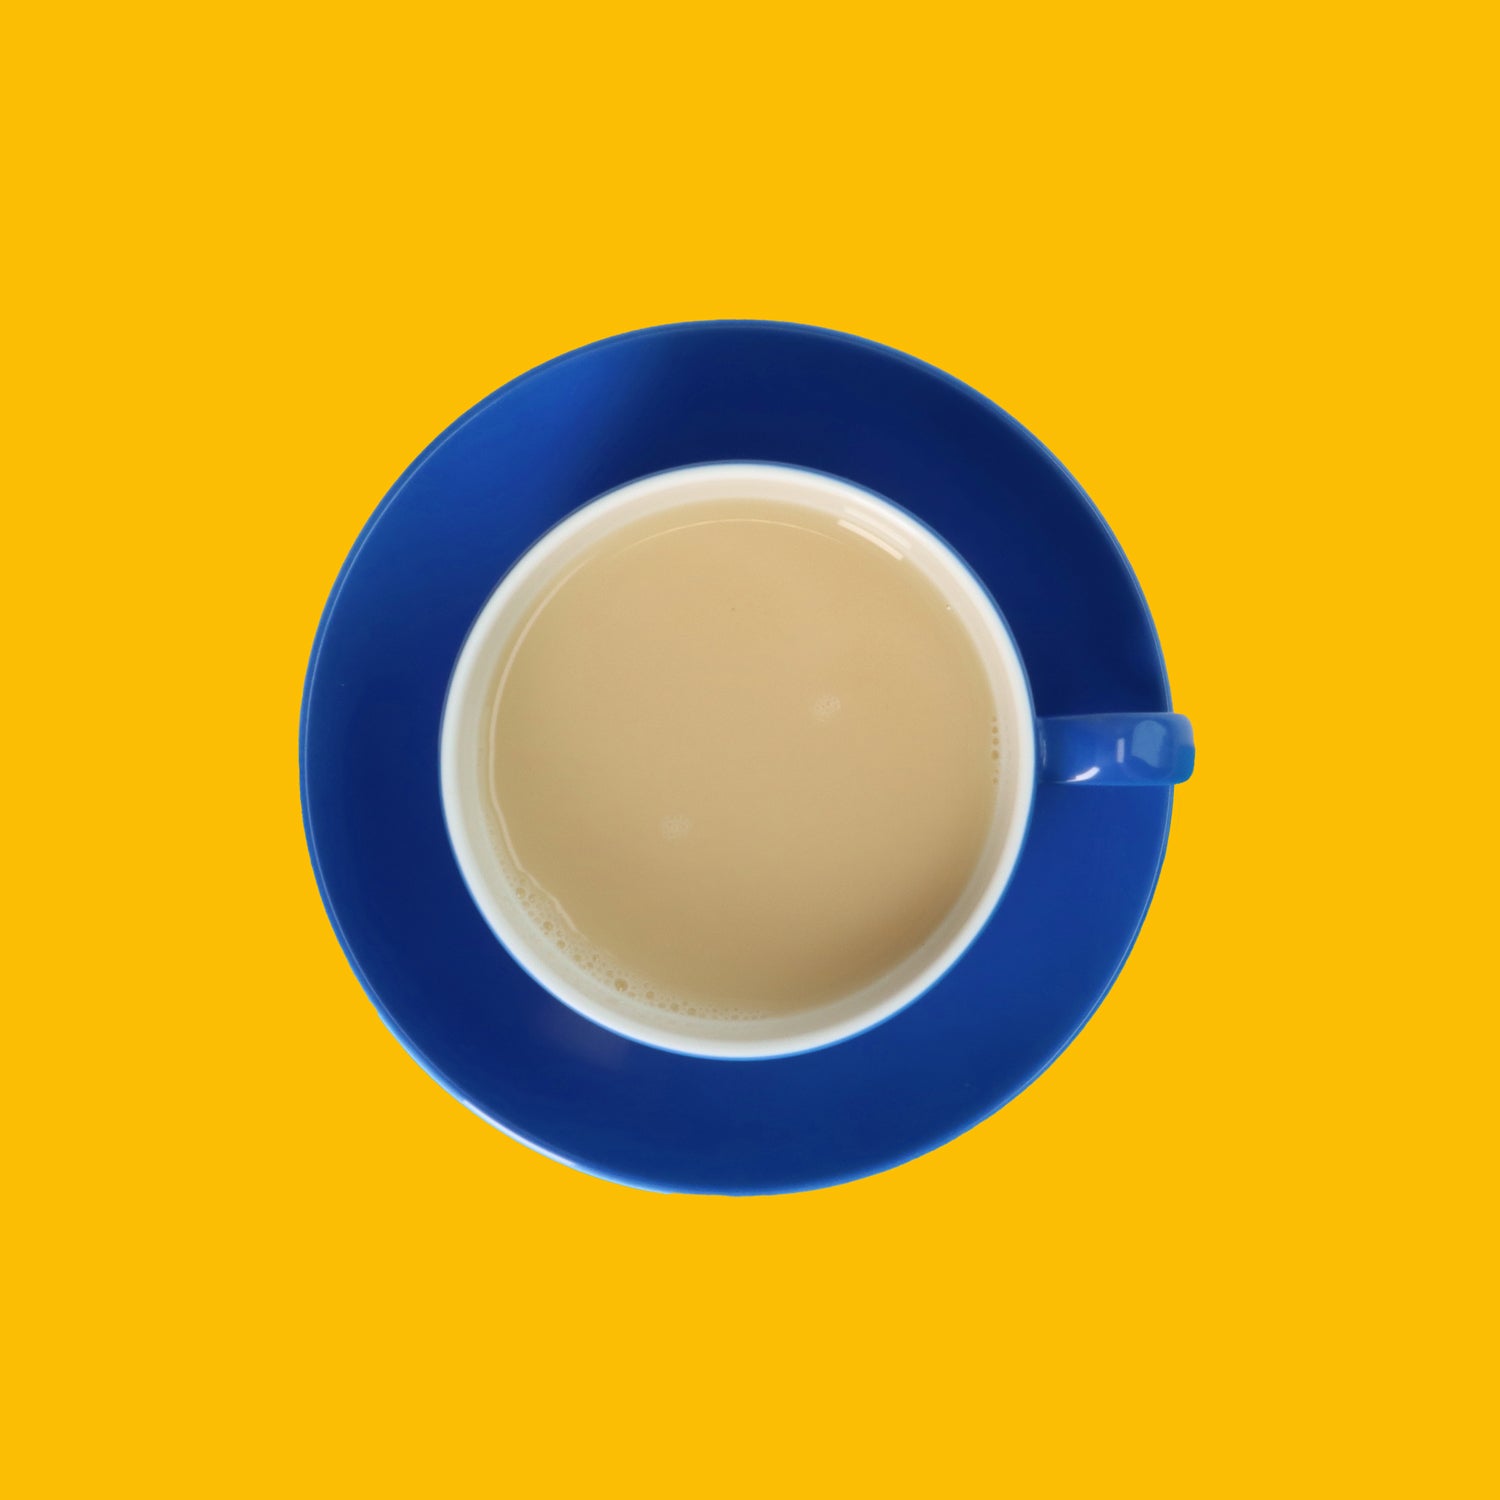 Drinkmich Bananengeschmack Haferdrink zum Selbermixen Serviervorschlag in blauer Kaffeetasse von oben auf gelbem Hintergrund